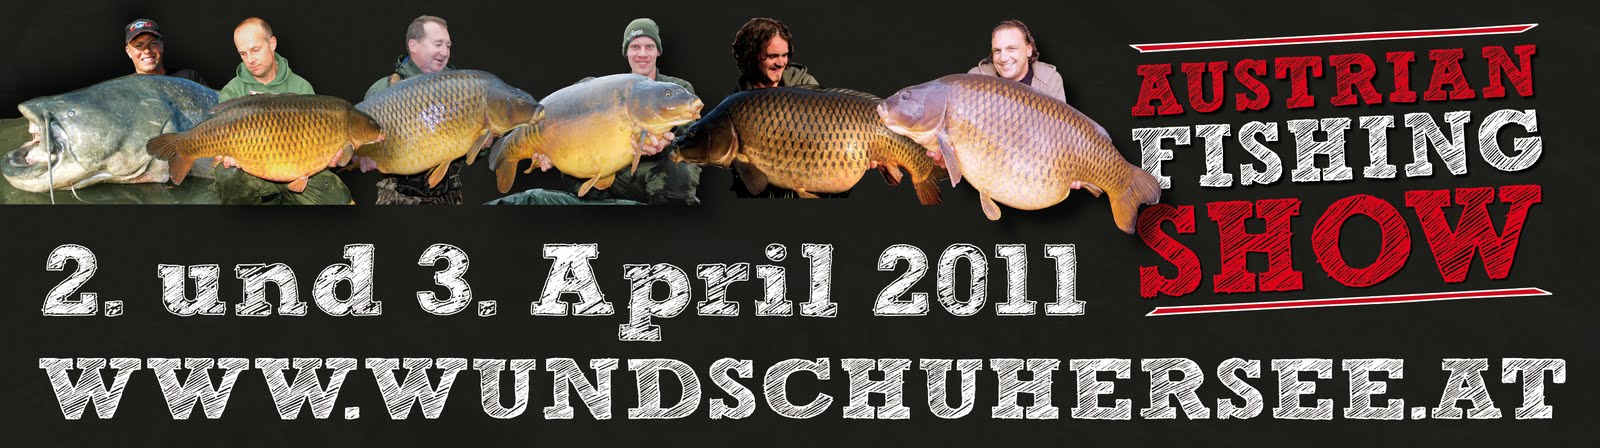 Austrian Fishing Show